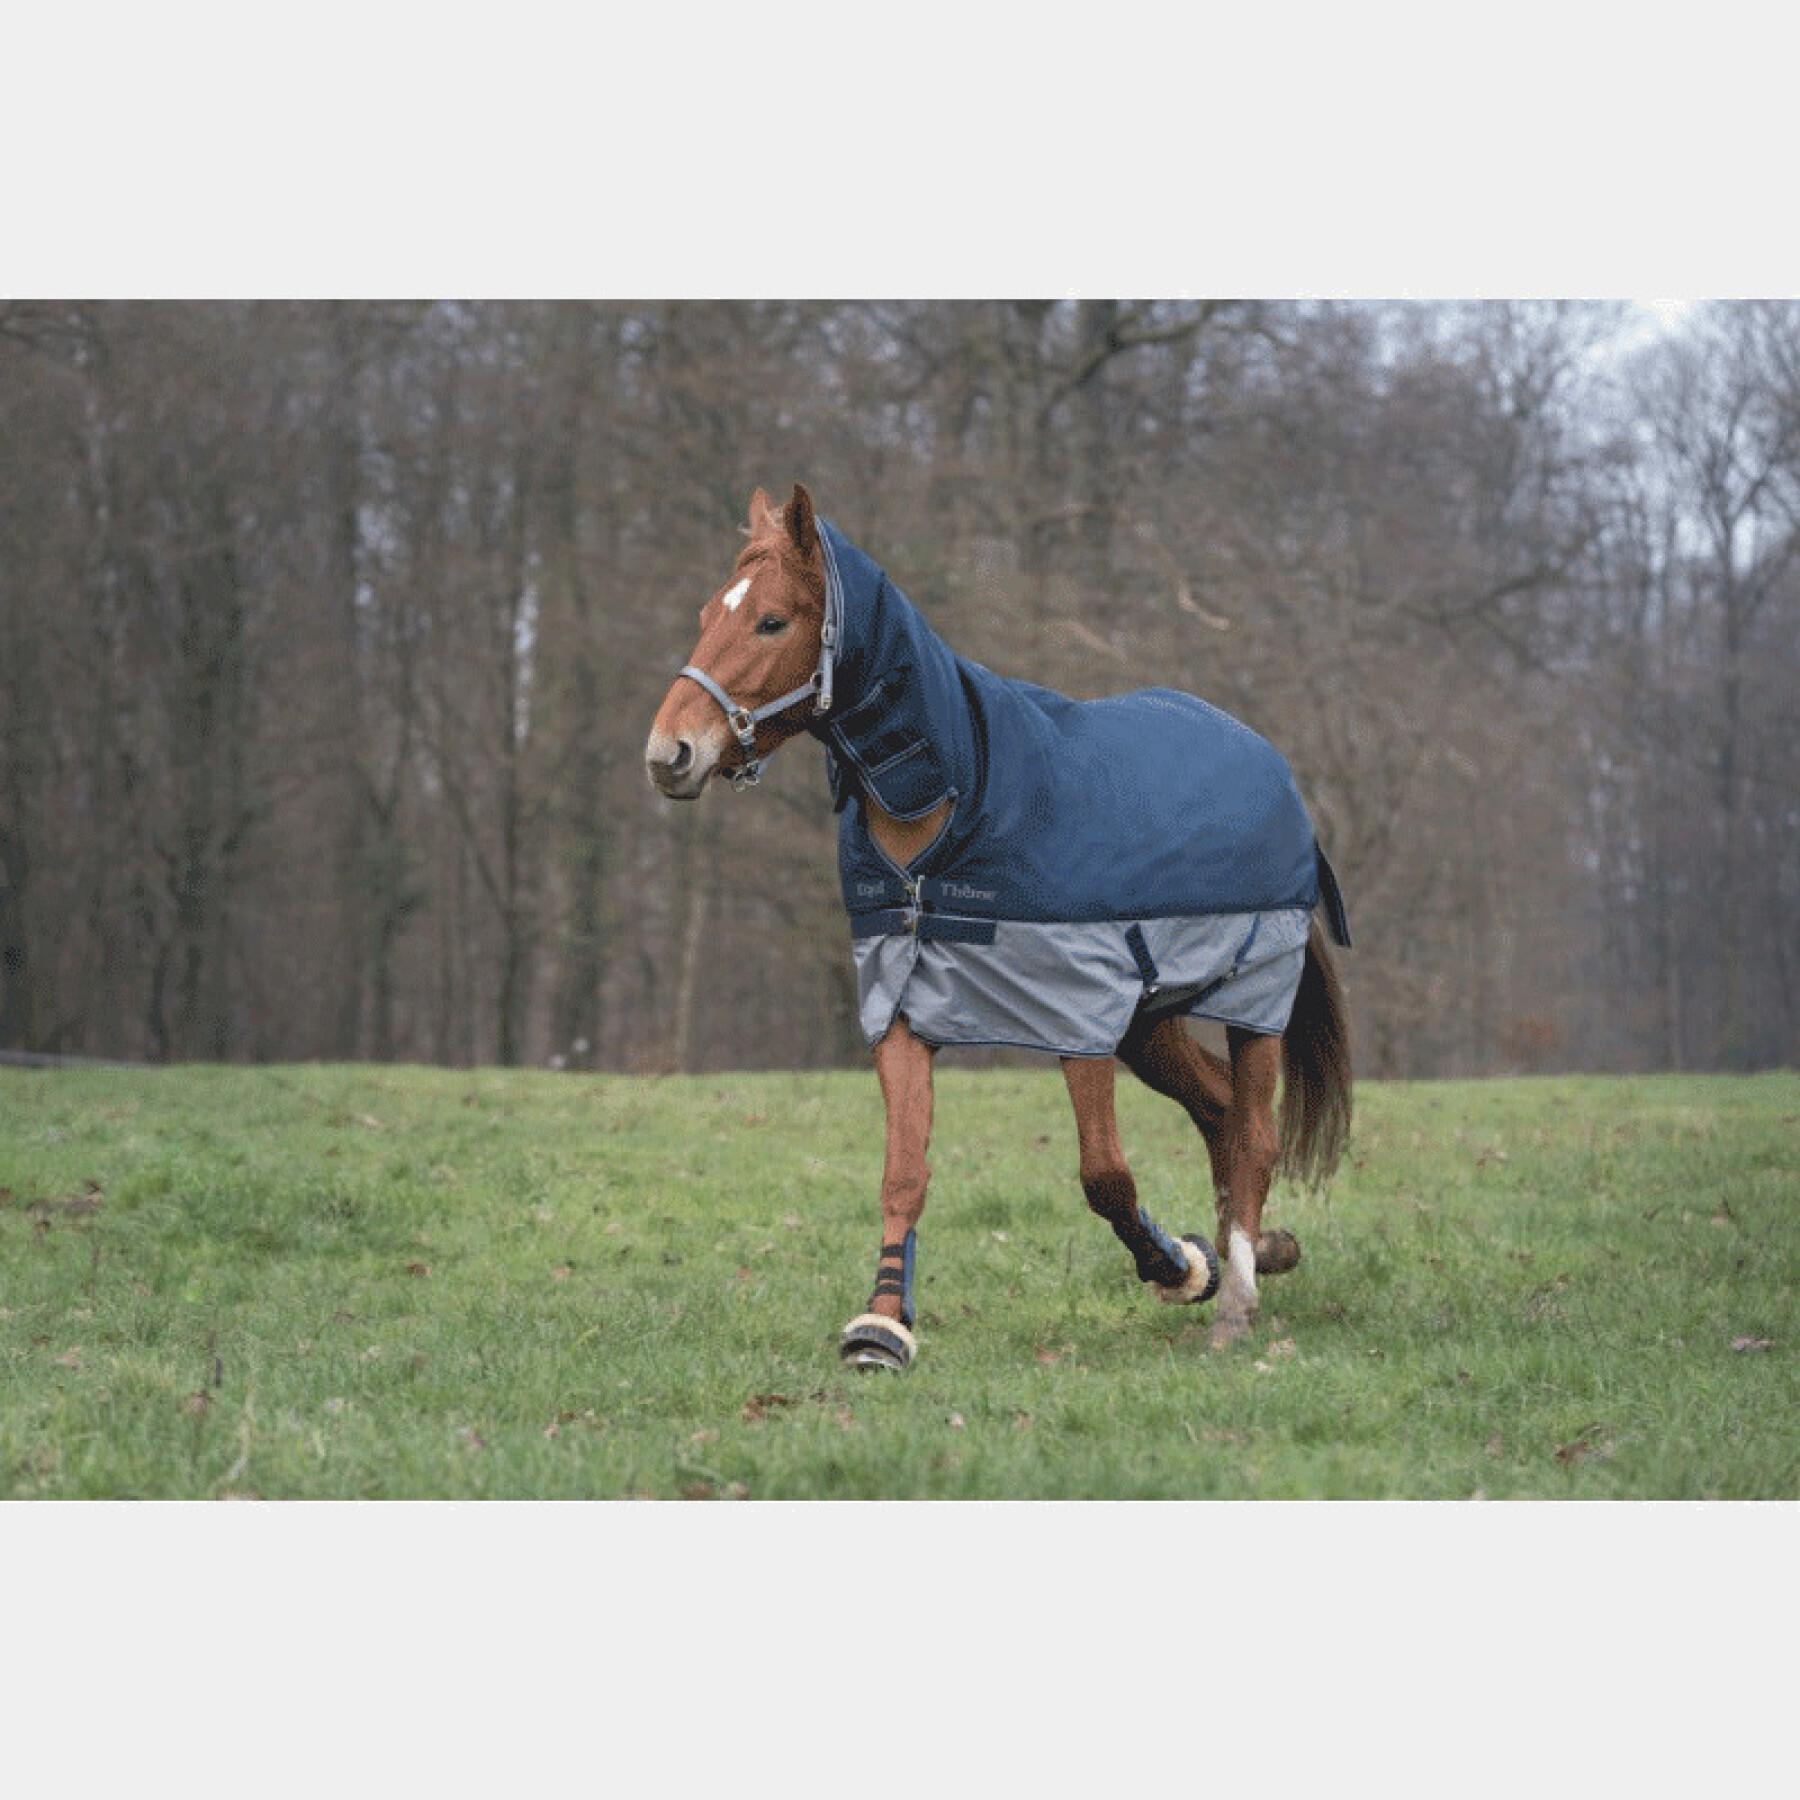 Outdoor horse blanket Equithème Tyrex 600 D Combo 350g